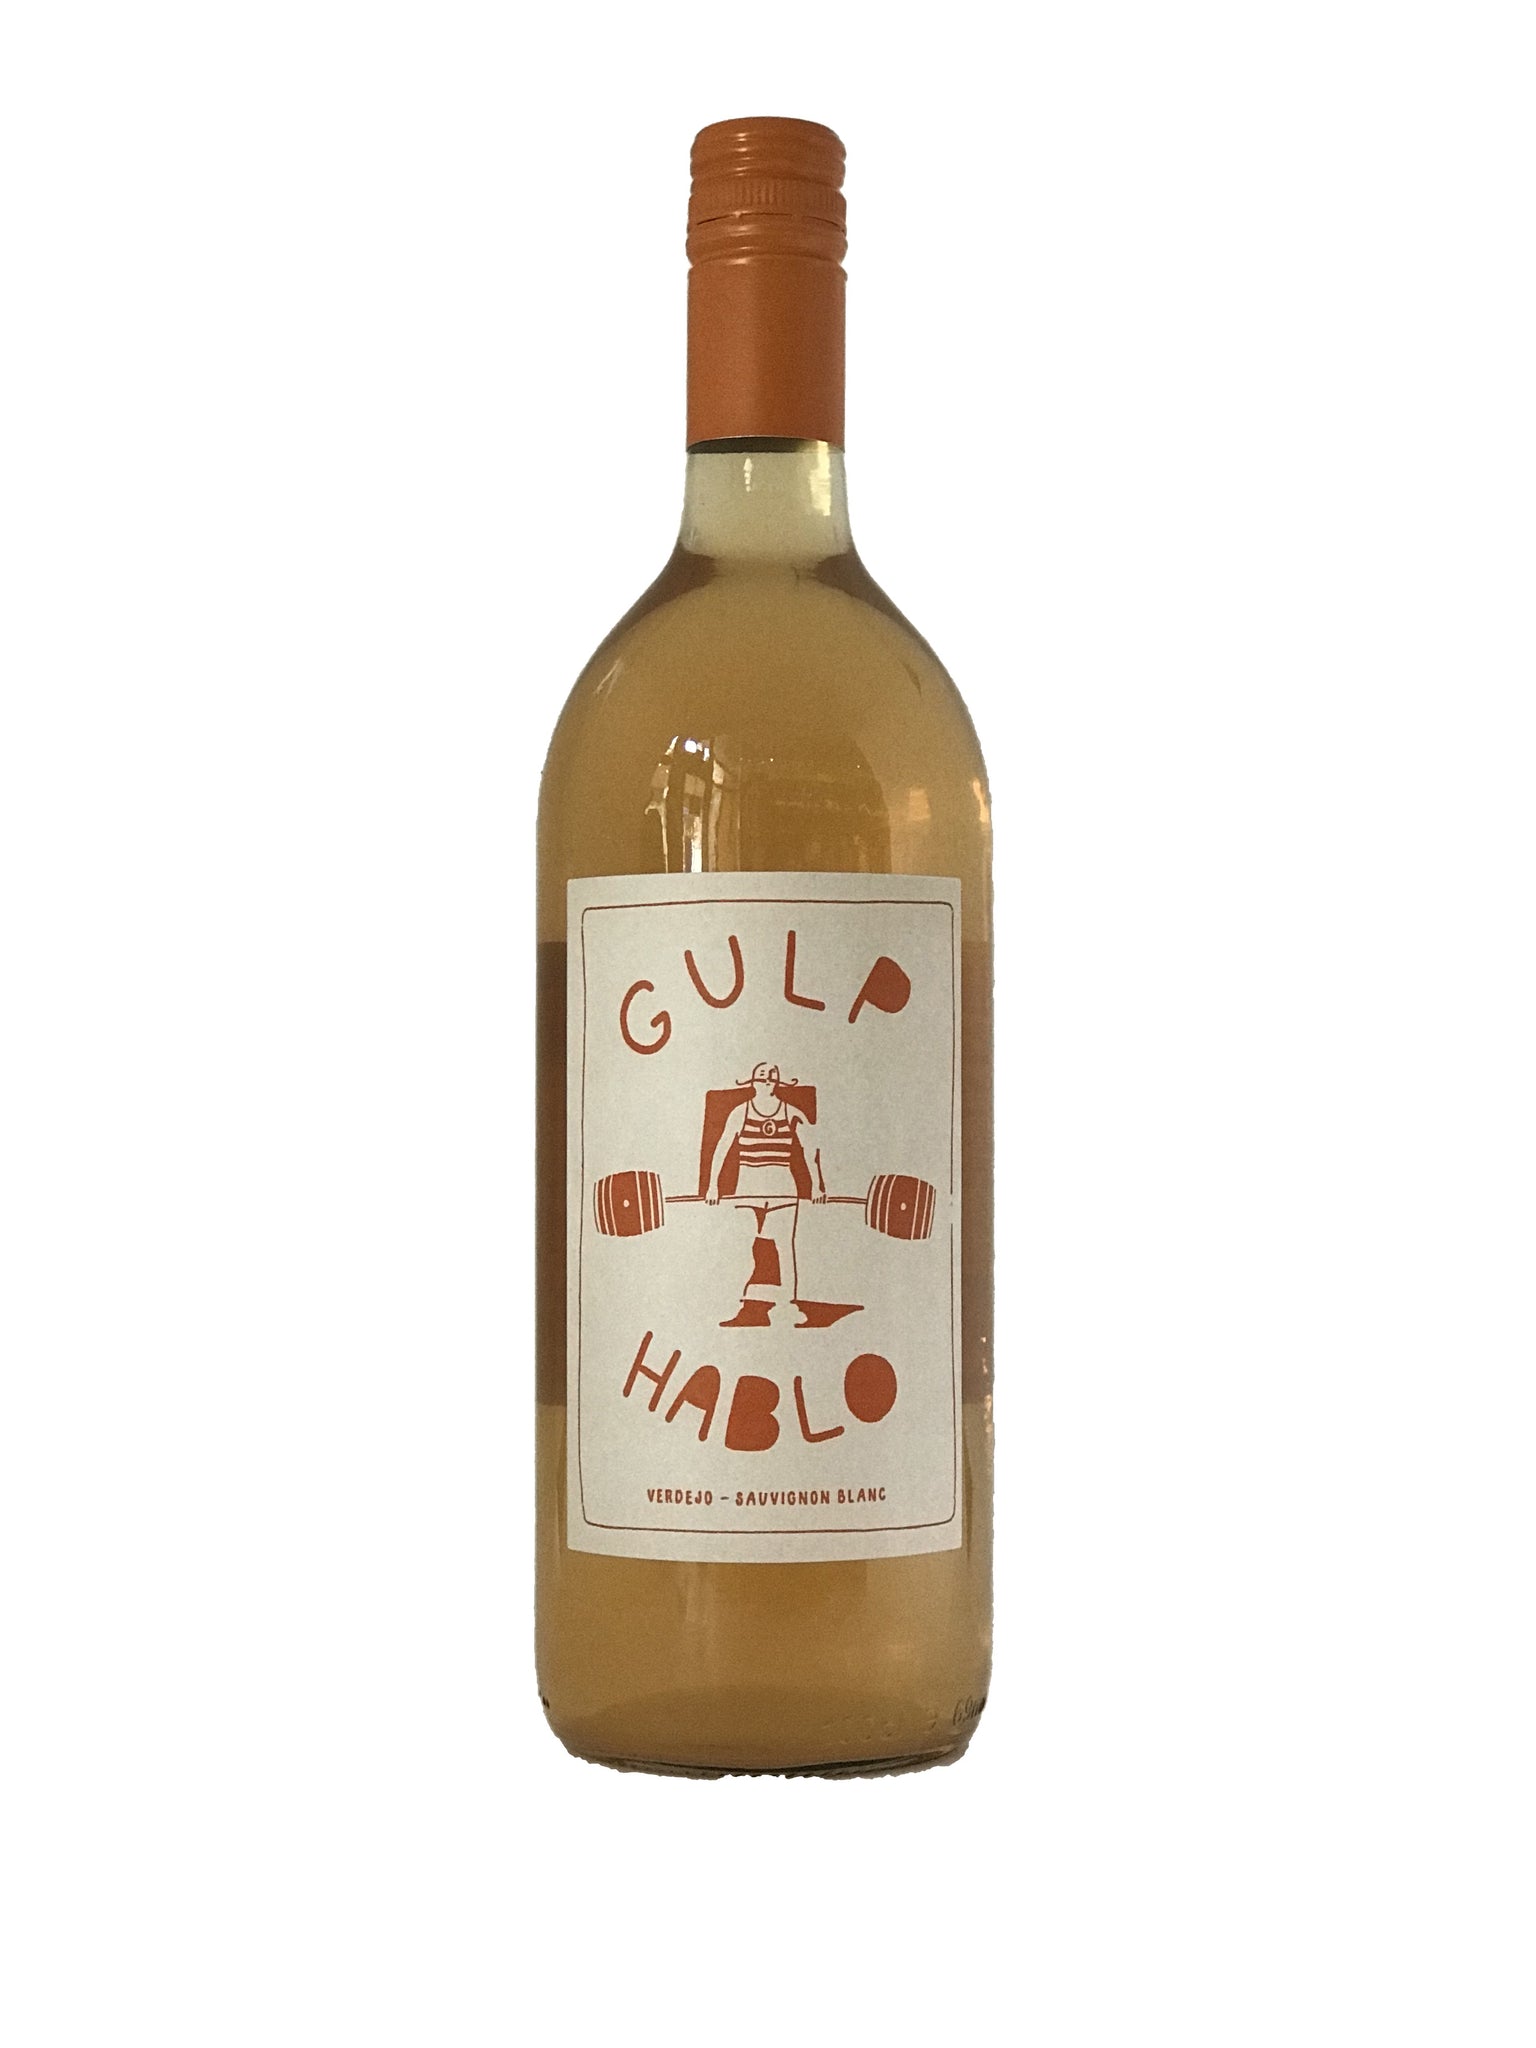 Gulp/Hablo, Orange Wine, Verdejo/Sauvignon Blanc 2022